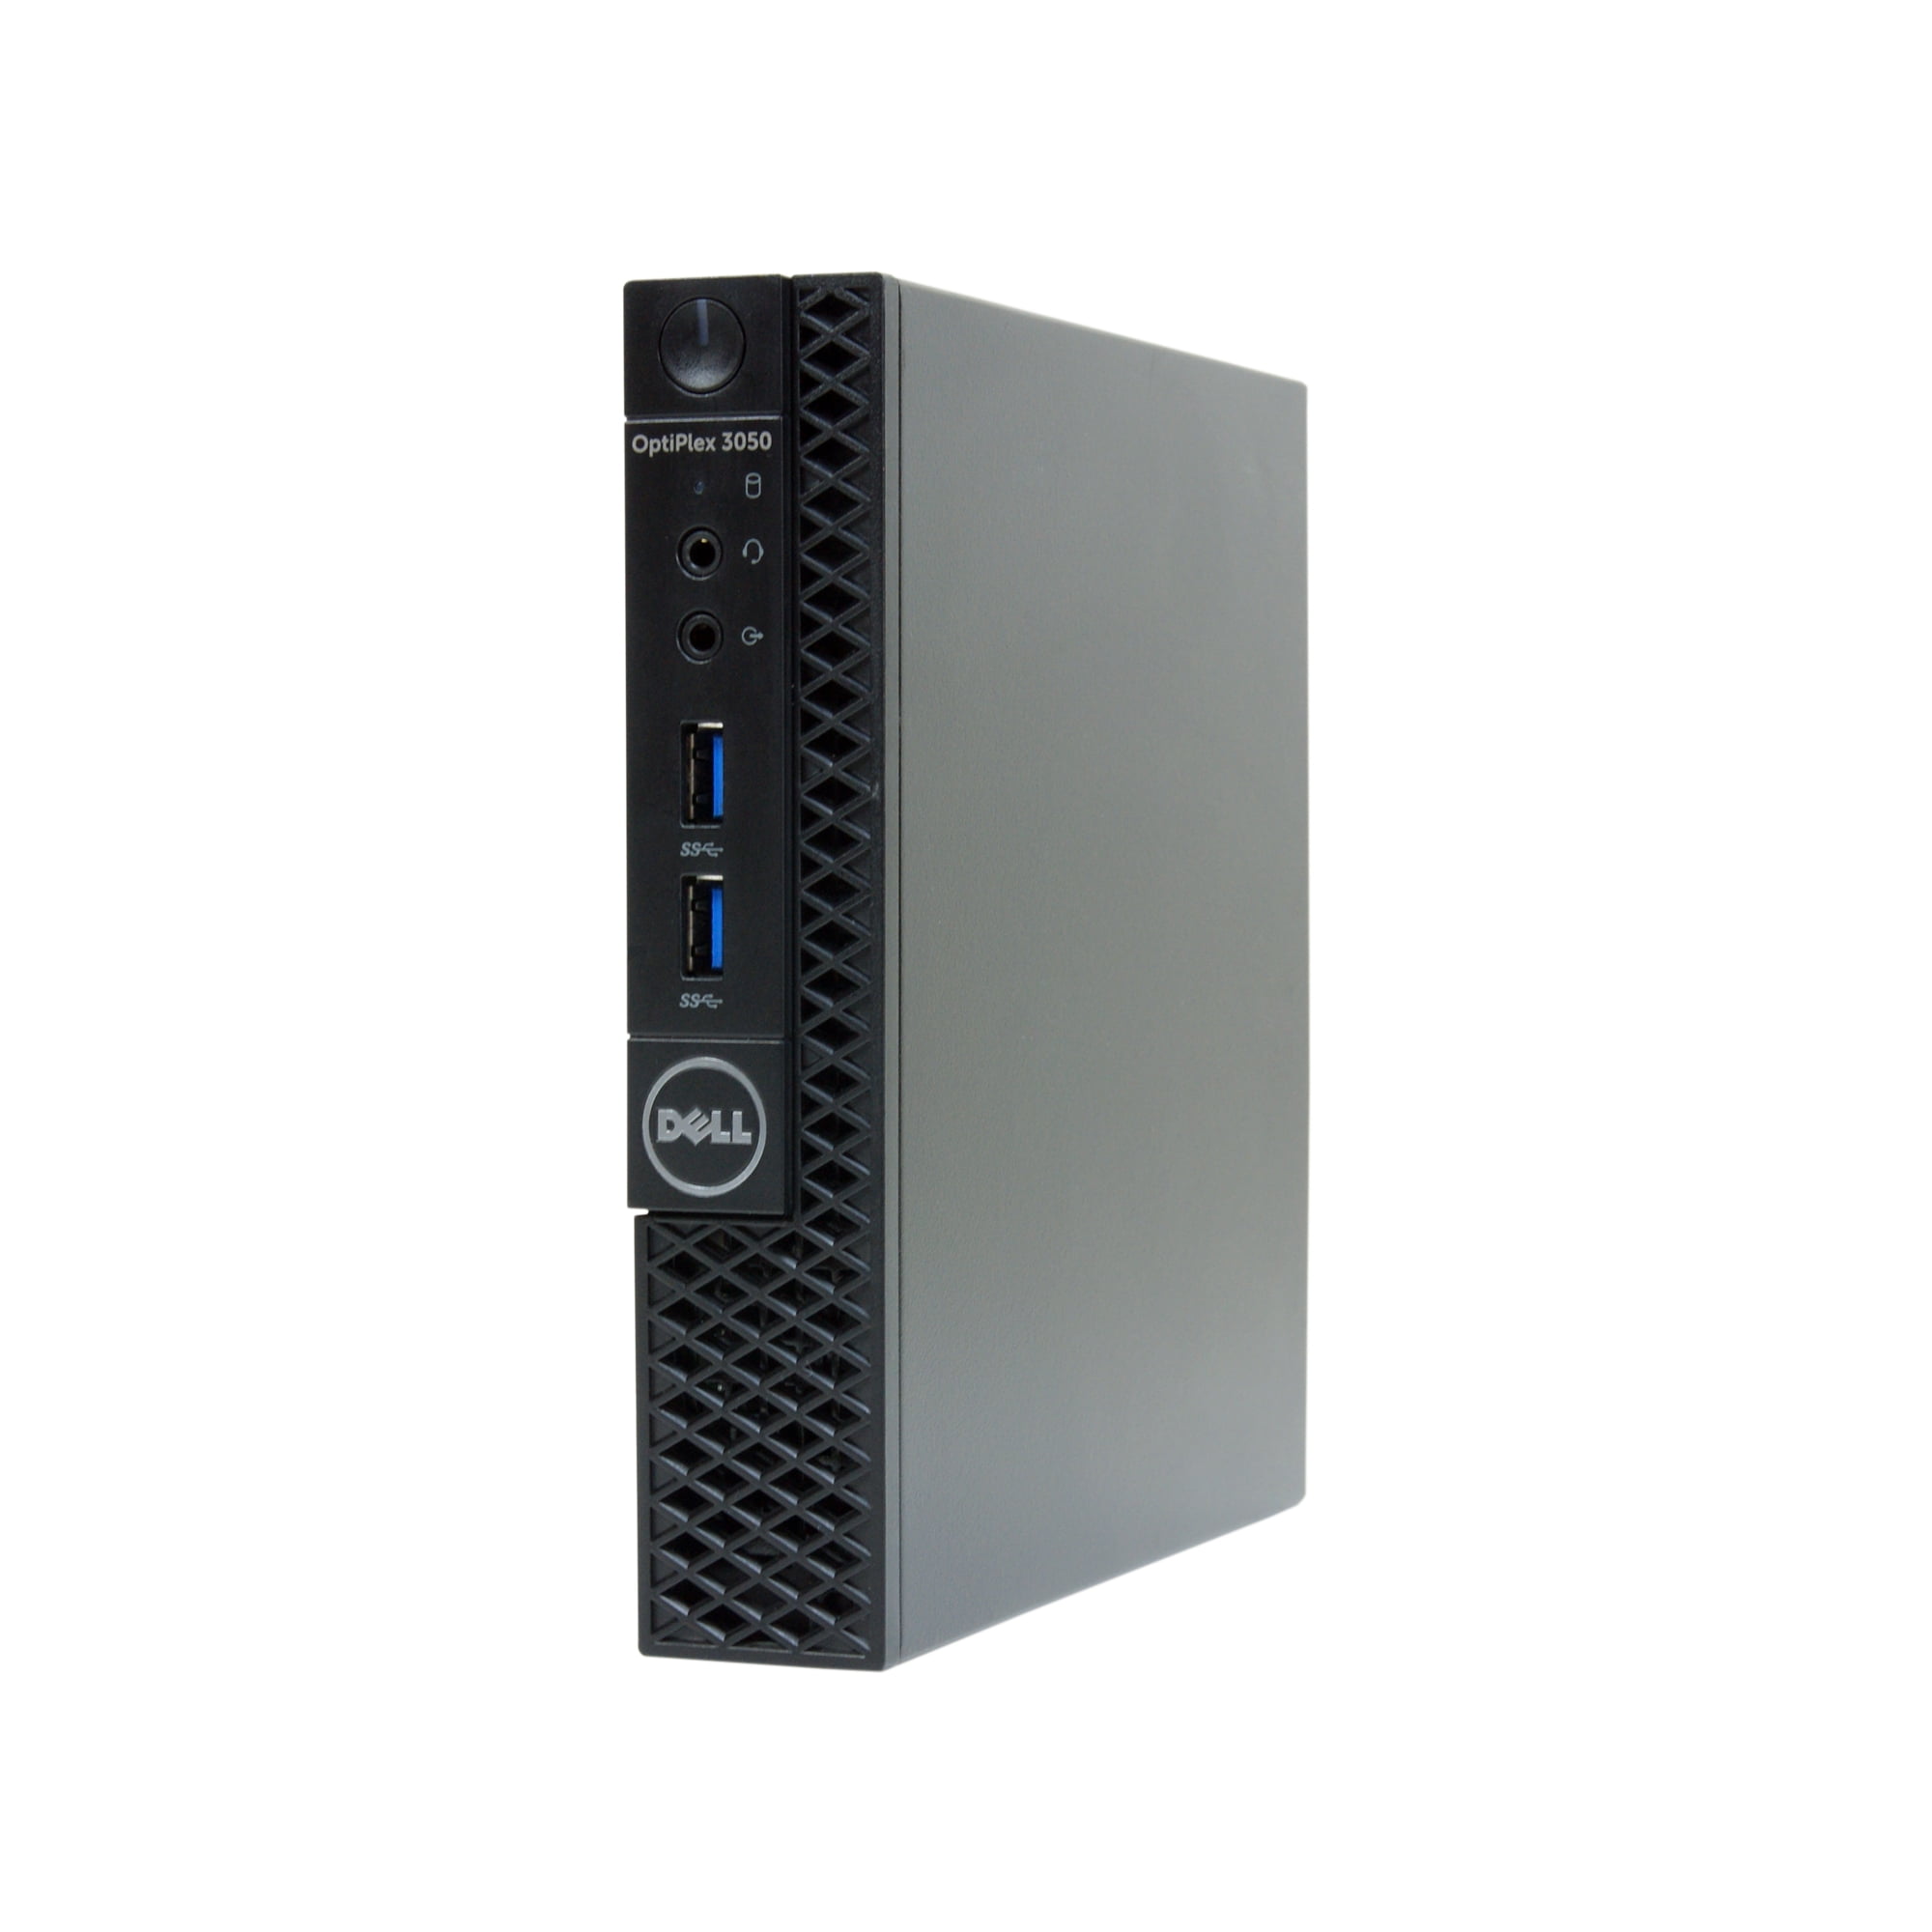 Restored Dell 3050-MICRO Desktop PC with Intel Core i5-6500T 2.5